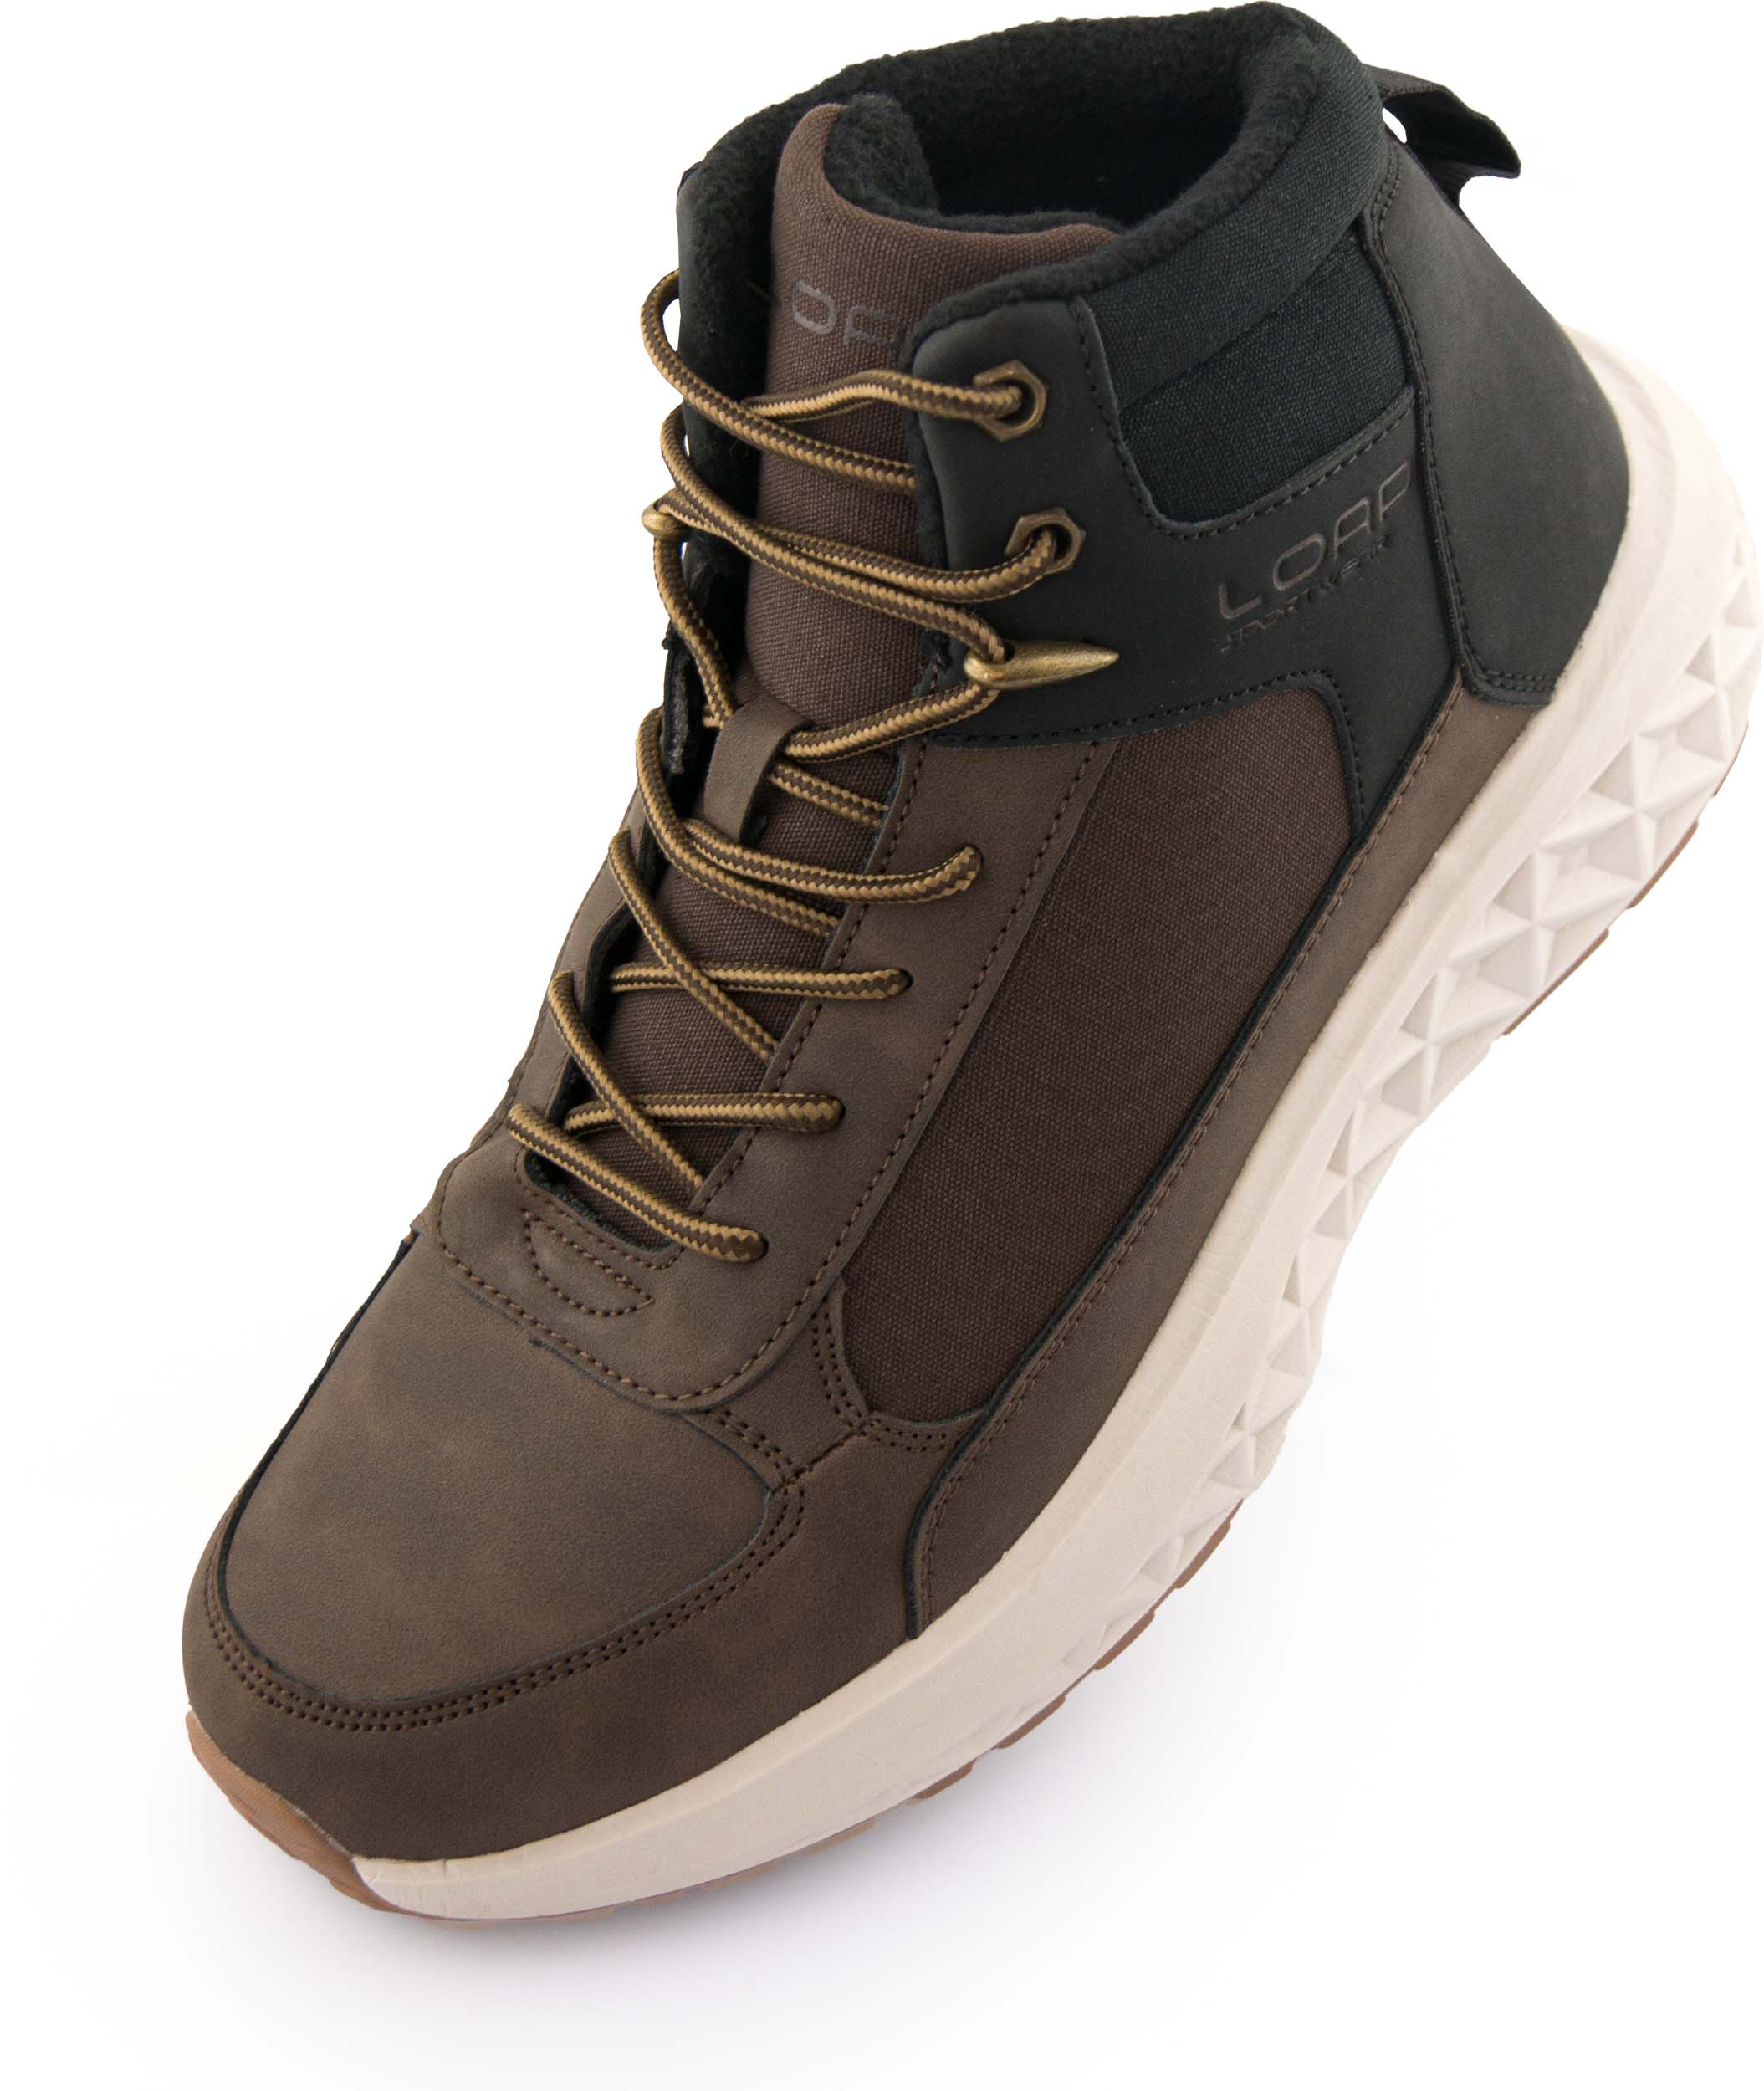 Pánské zimní boty LOAP WESTER brown|45